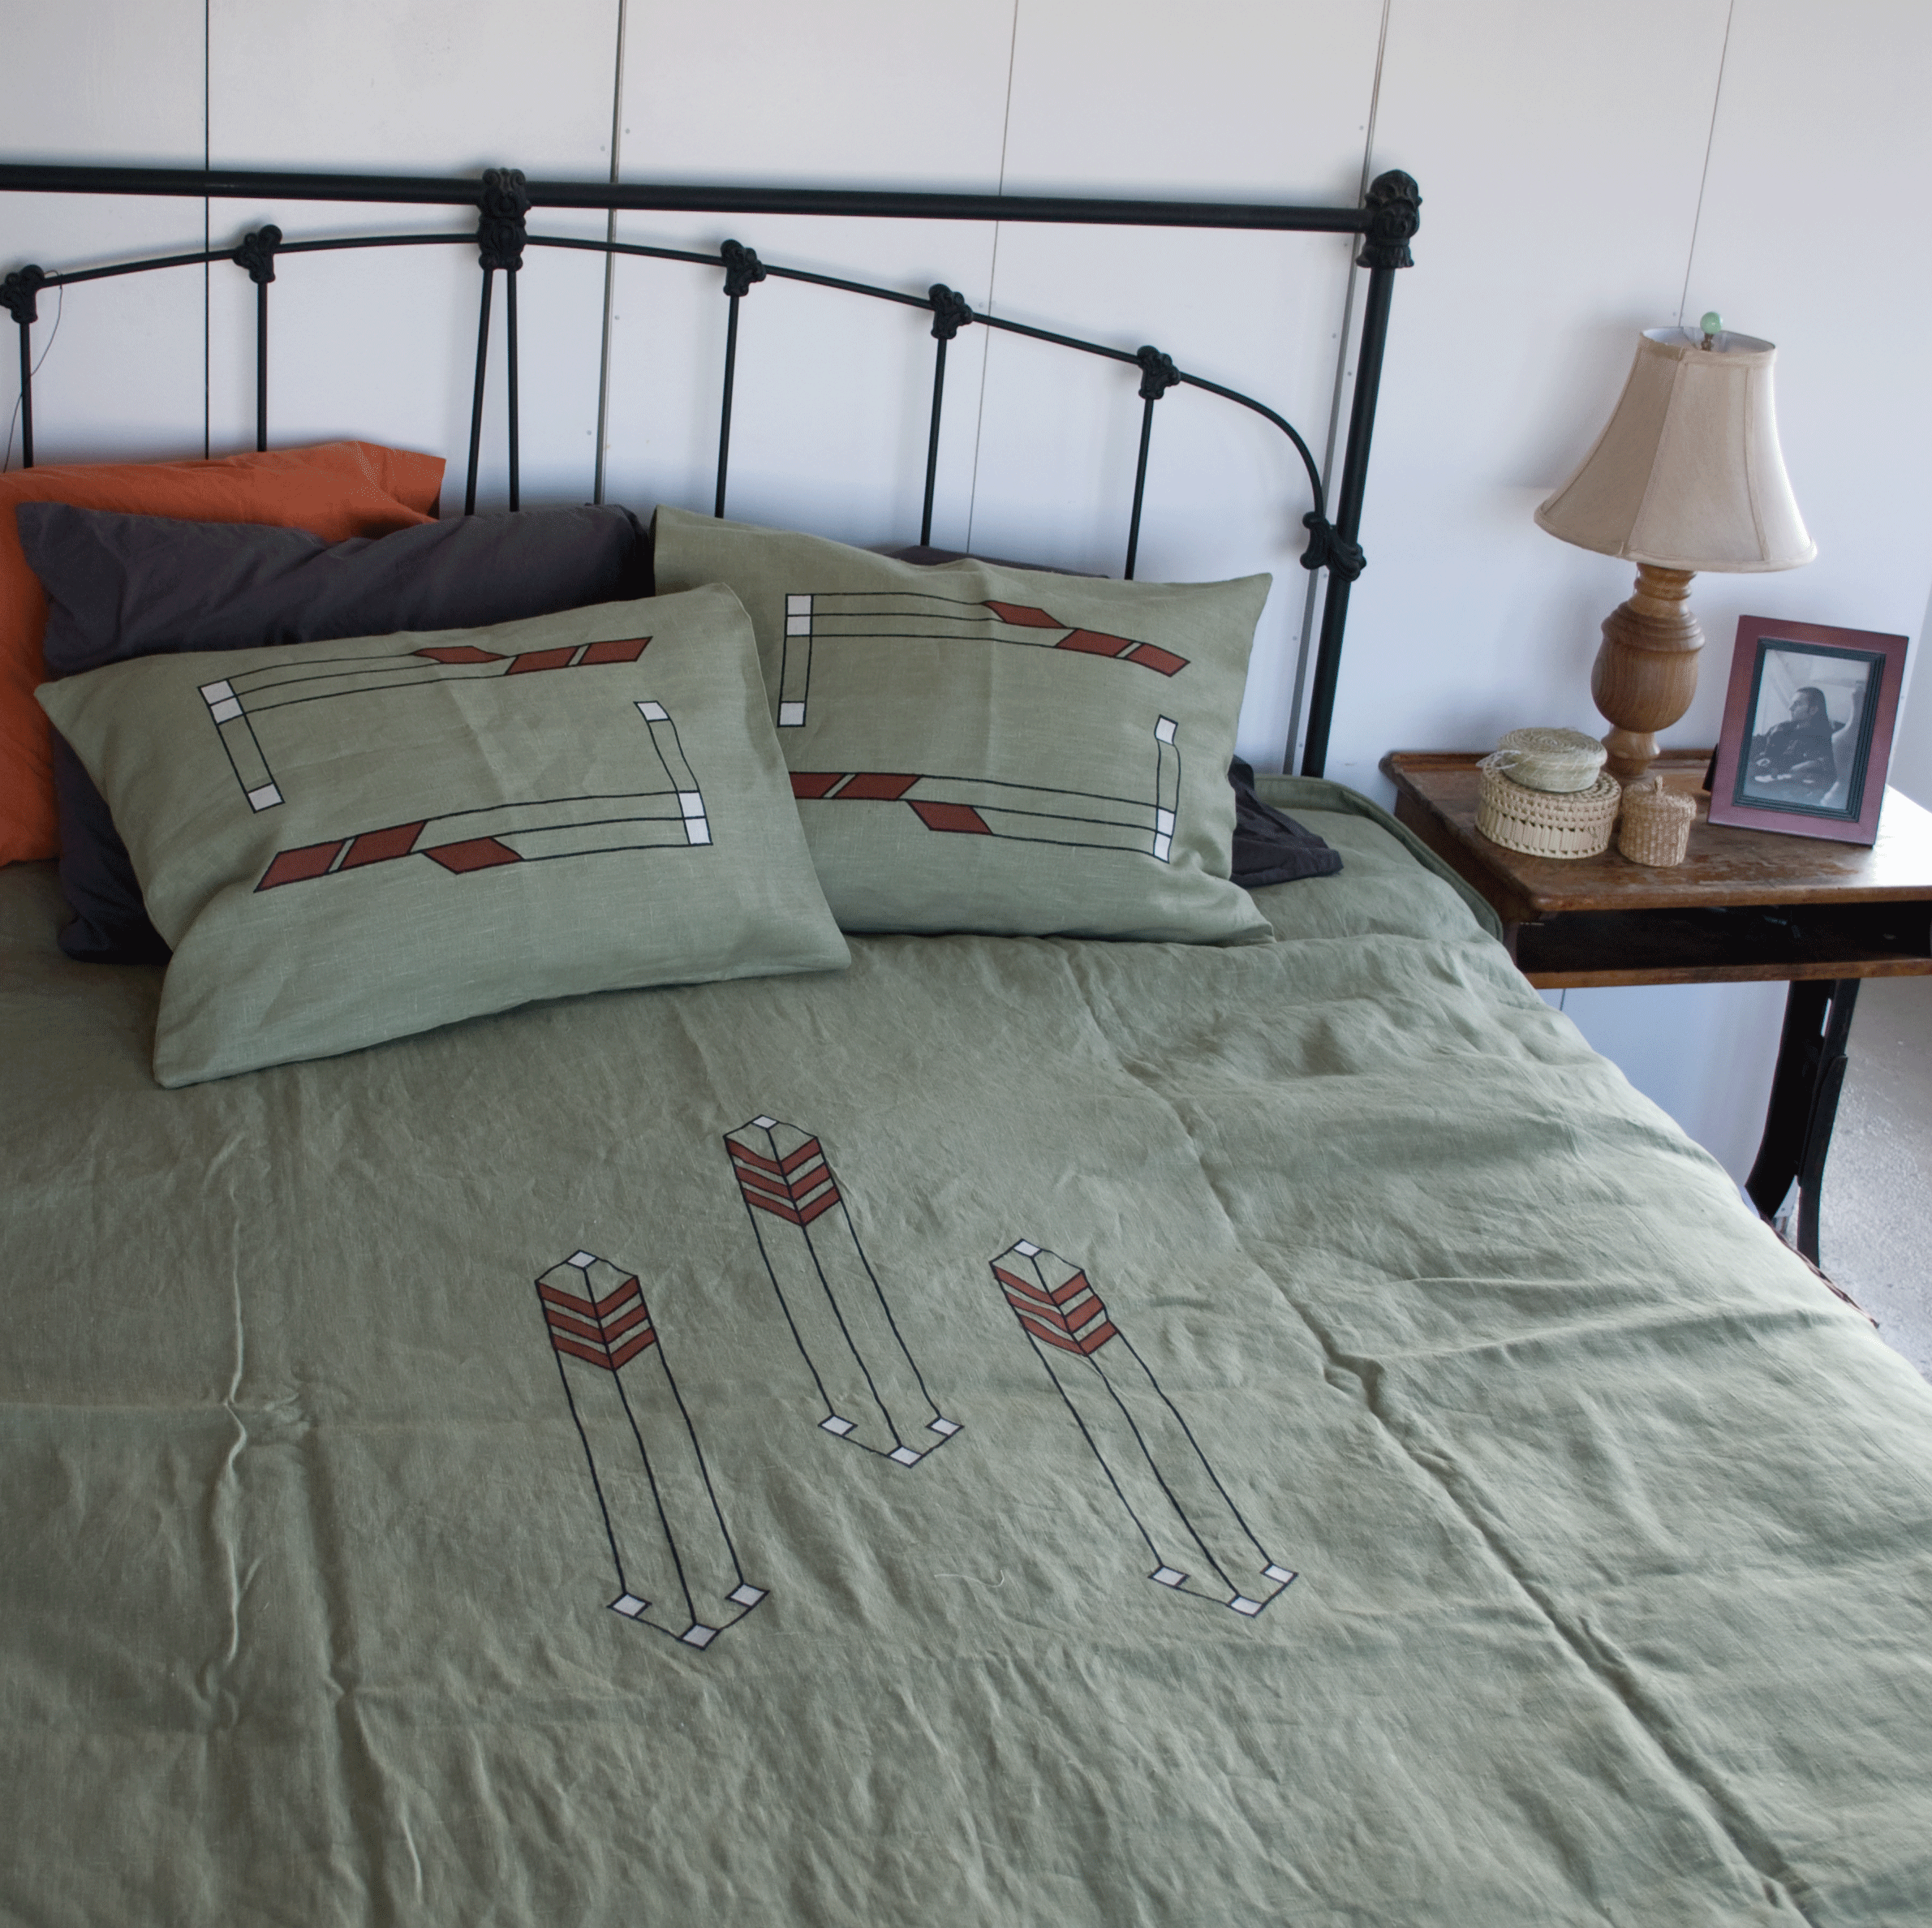 Bedding Ann Wallace For Prairie Textiles